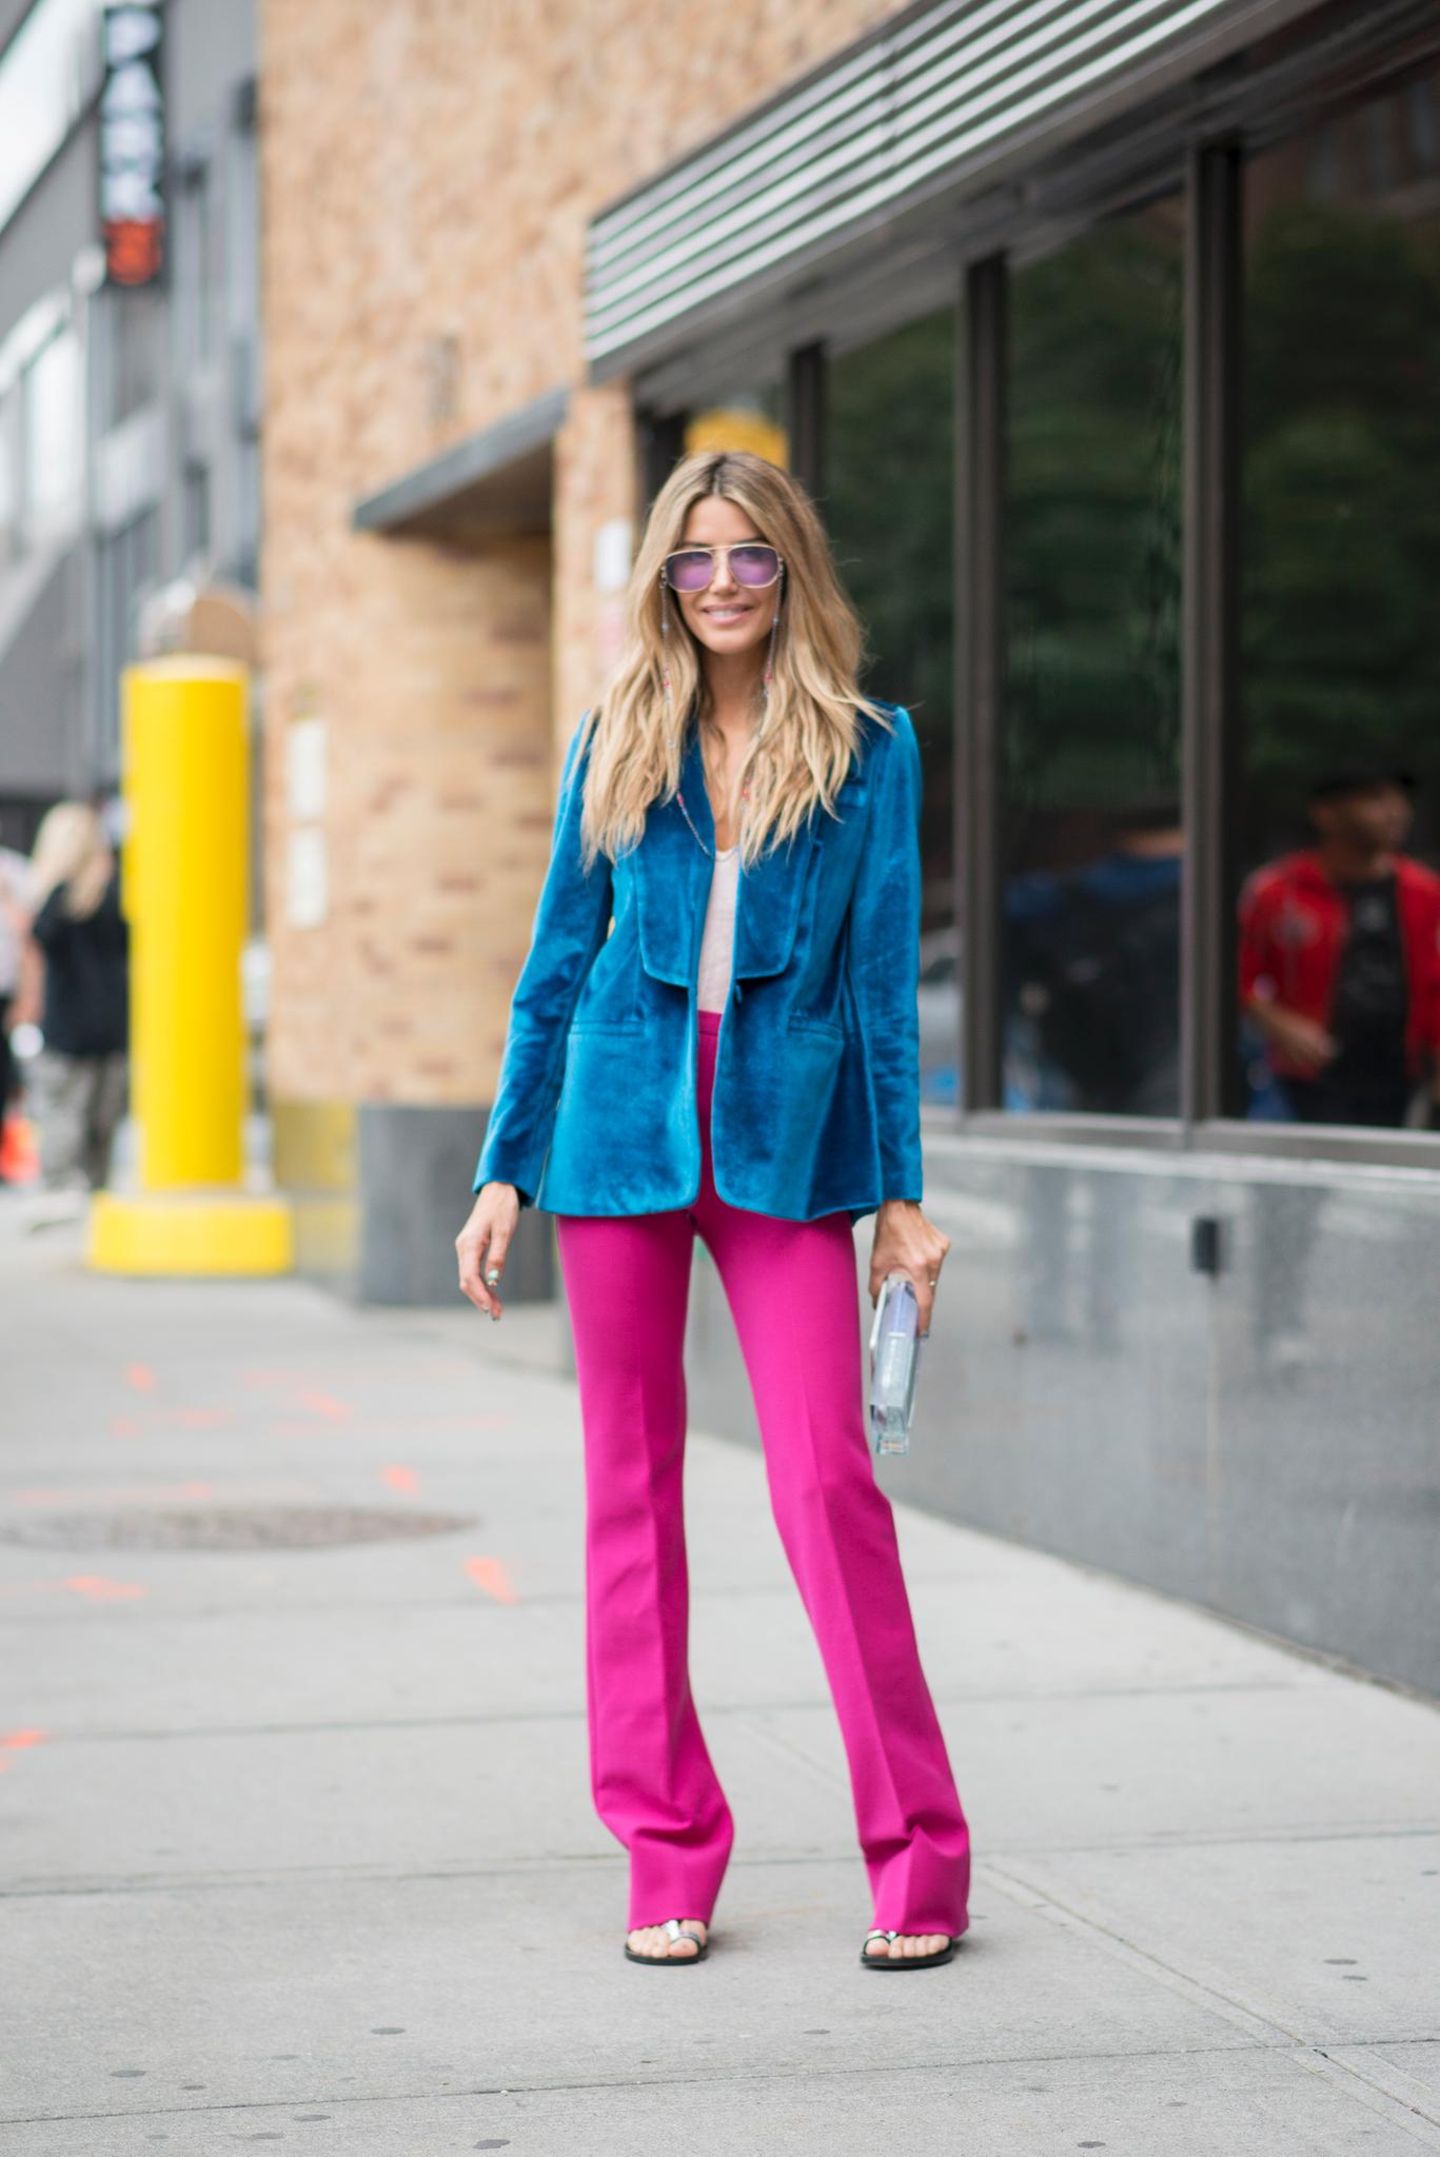 Bloggerin trägt blauen Samt-Blazer zu pinker Hose